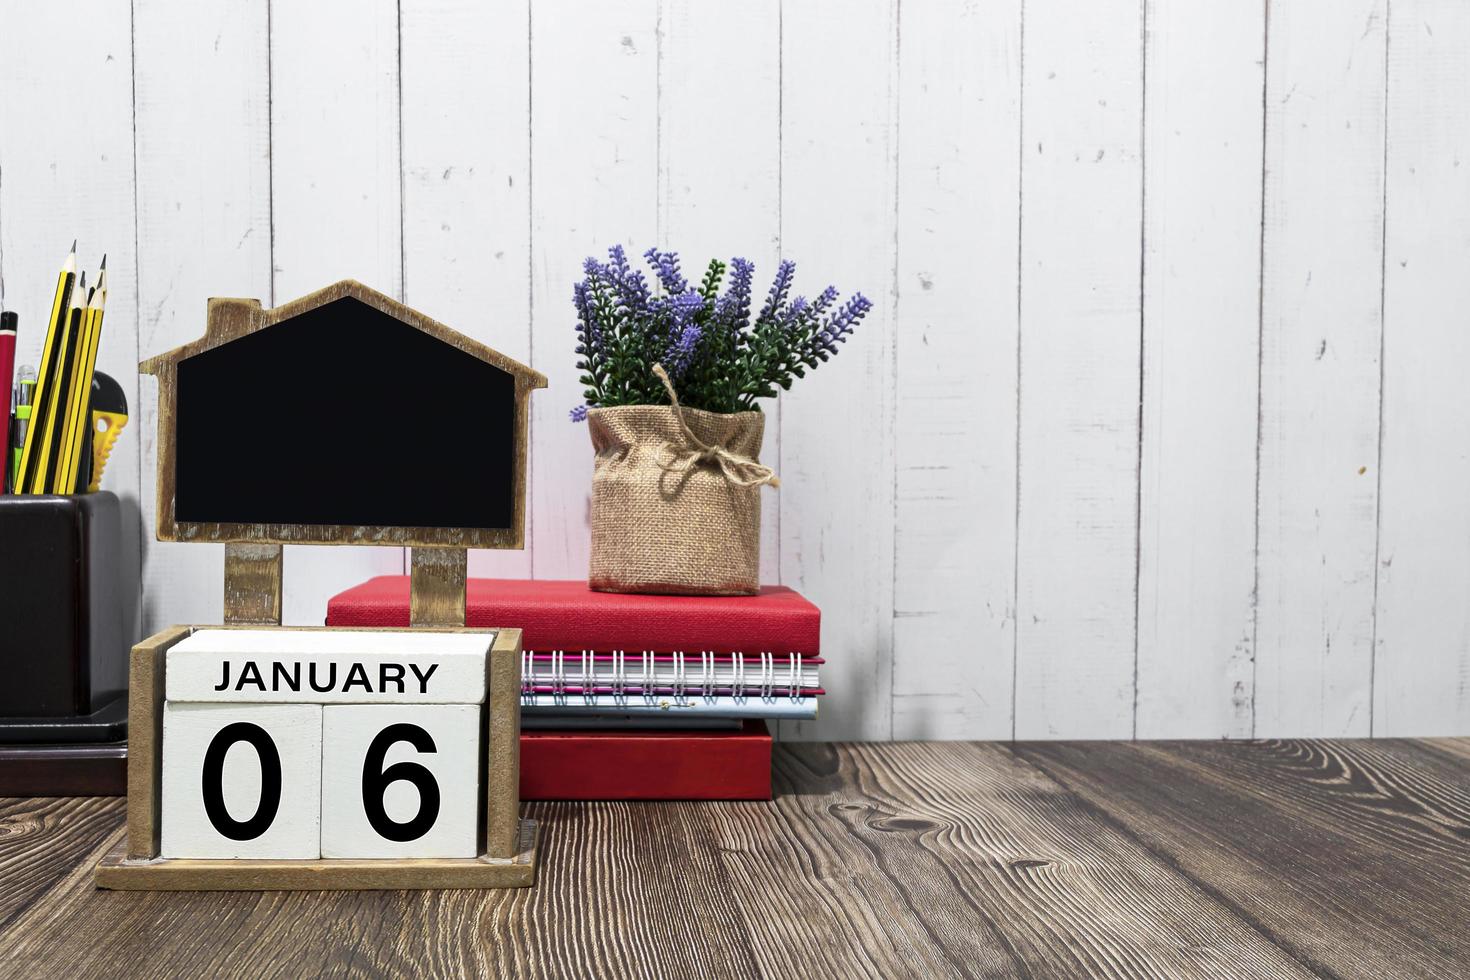 06 de enero texto de fecha de calendario en bloque de madera blanco con papelería en escritorio de madera foto